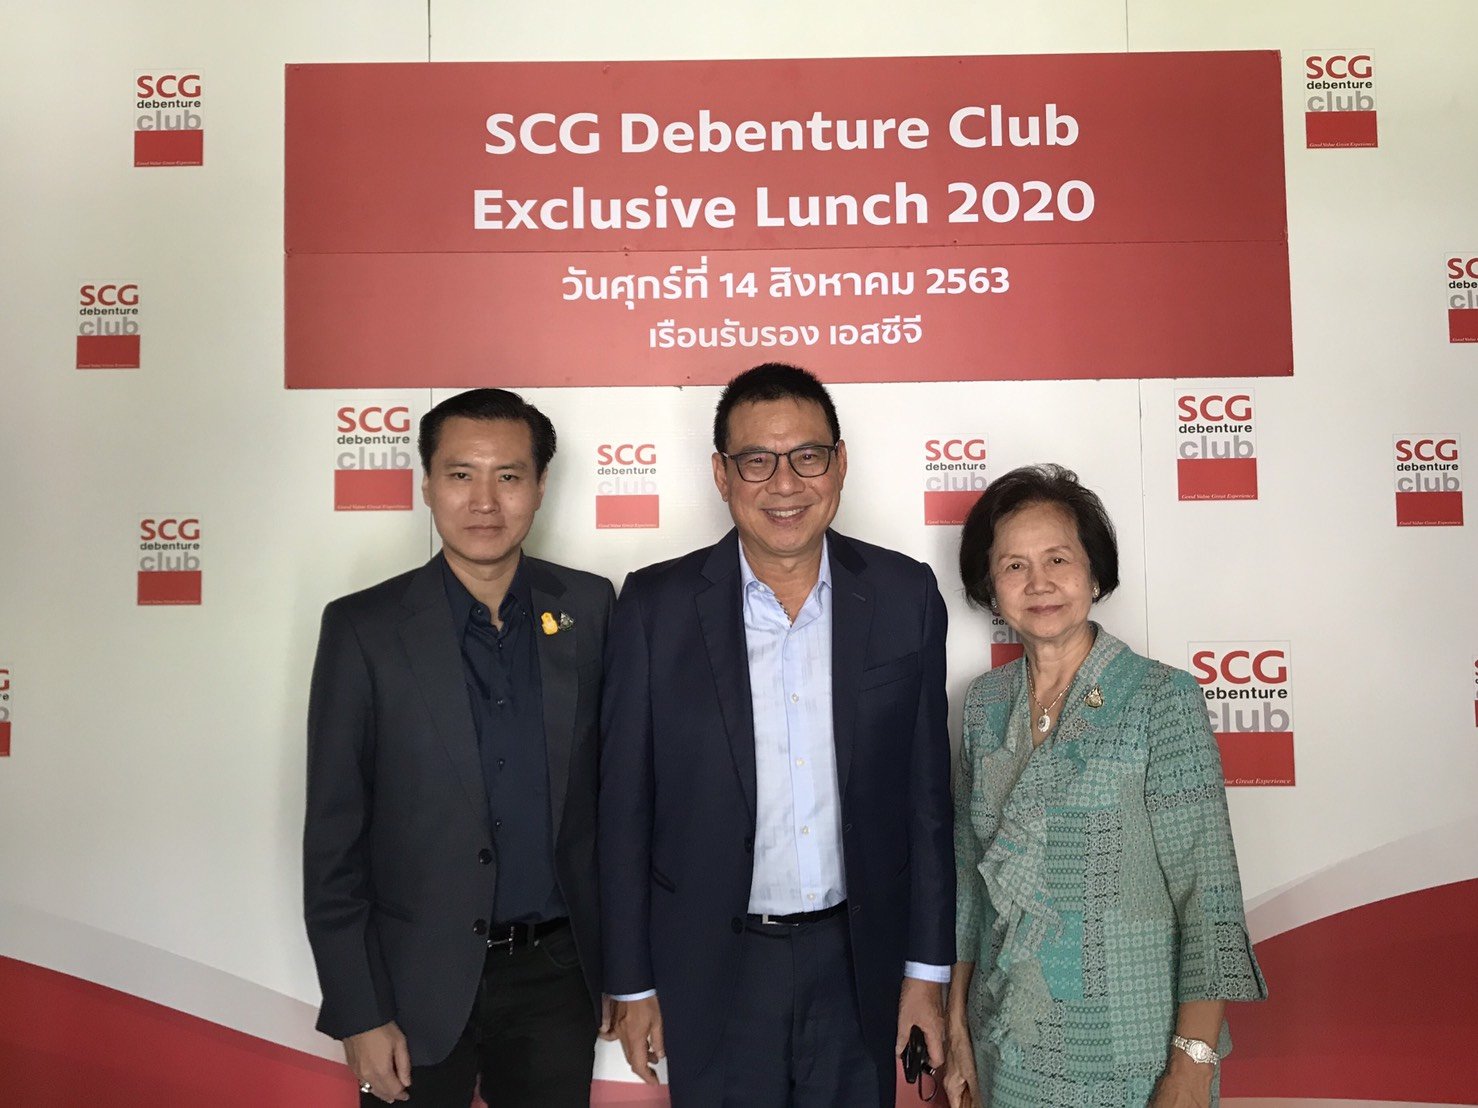 ดร. นฤมล สุรเศรษฐ ประธานกรรมการ L.S. JEWELRY GROUP และดร.พีรวัฒน์ สุรเศรษฐ กรรมการผู้จัดการ  L.S. JEWELRY GROUP ร่วมรับประทานอาหารกลางวันในงาน SCG Debenture Club Exclusive Lunch 2020 กับผู้บริหาร SCG ซึ่งประกอบด้วย คุณรุ่งโรจน์ รังสิโยภาส กรรมการผู้จัดการ